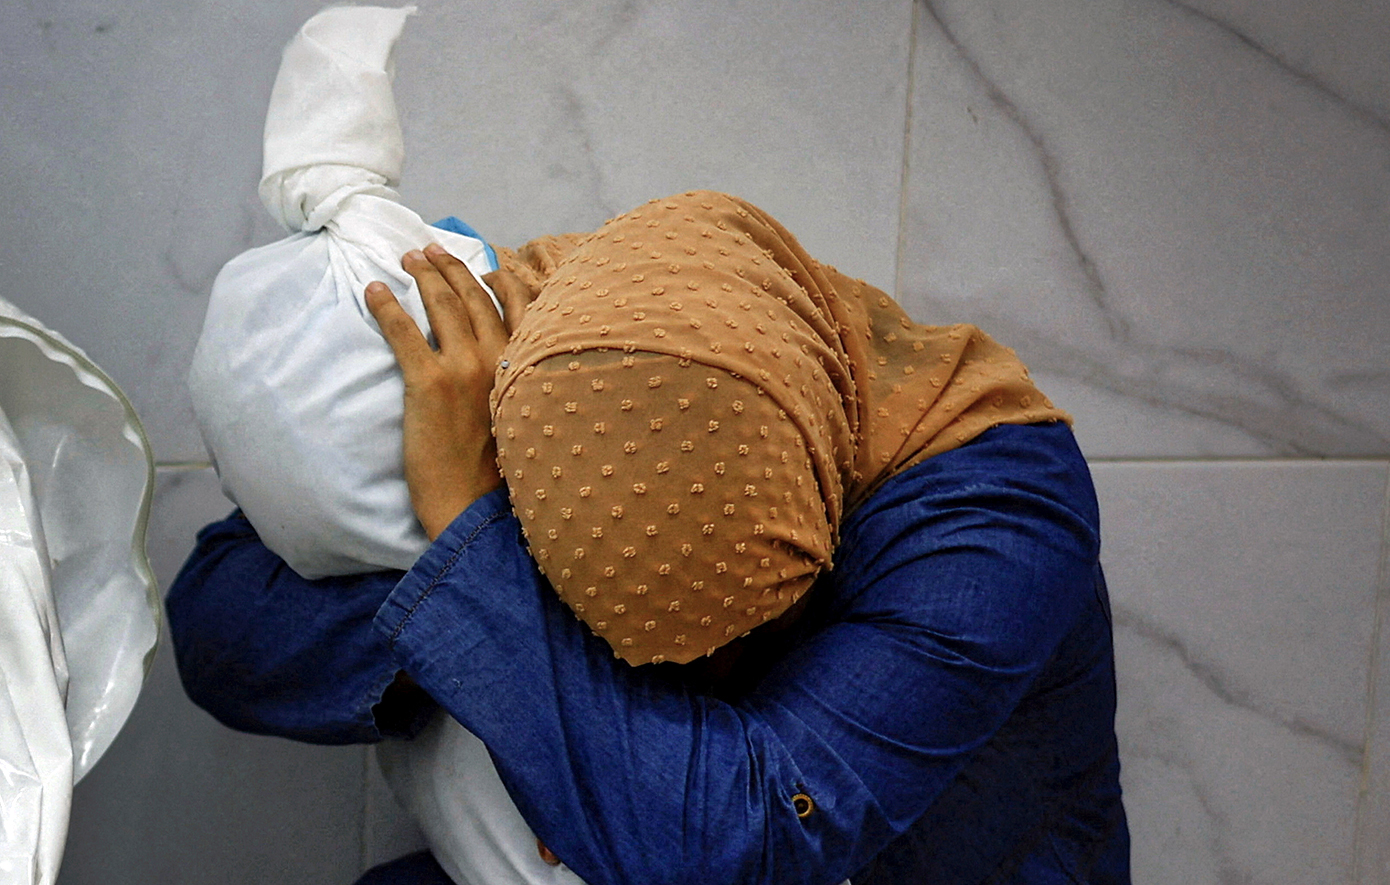 Η φωτογραφία της Παλαιστίνιας που έχει στην αγκαλιά της τη νεκρή ανιψιά της τιμήθηκε με το πρώτο βραβείο του World Press Photo